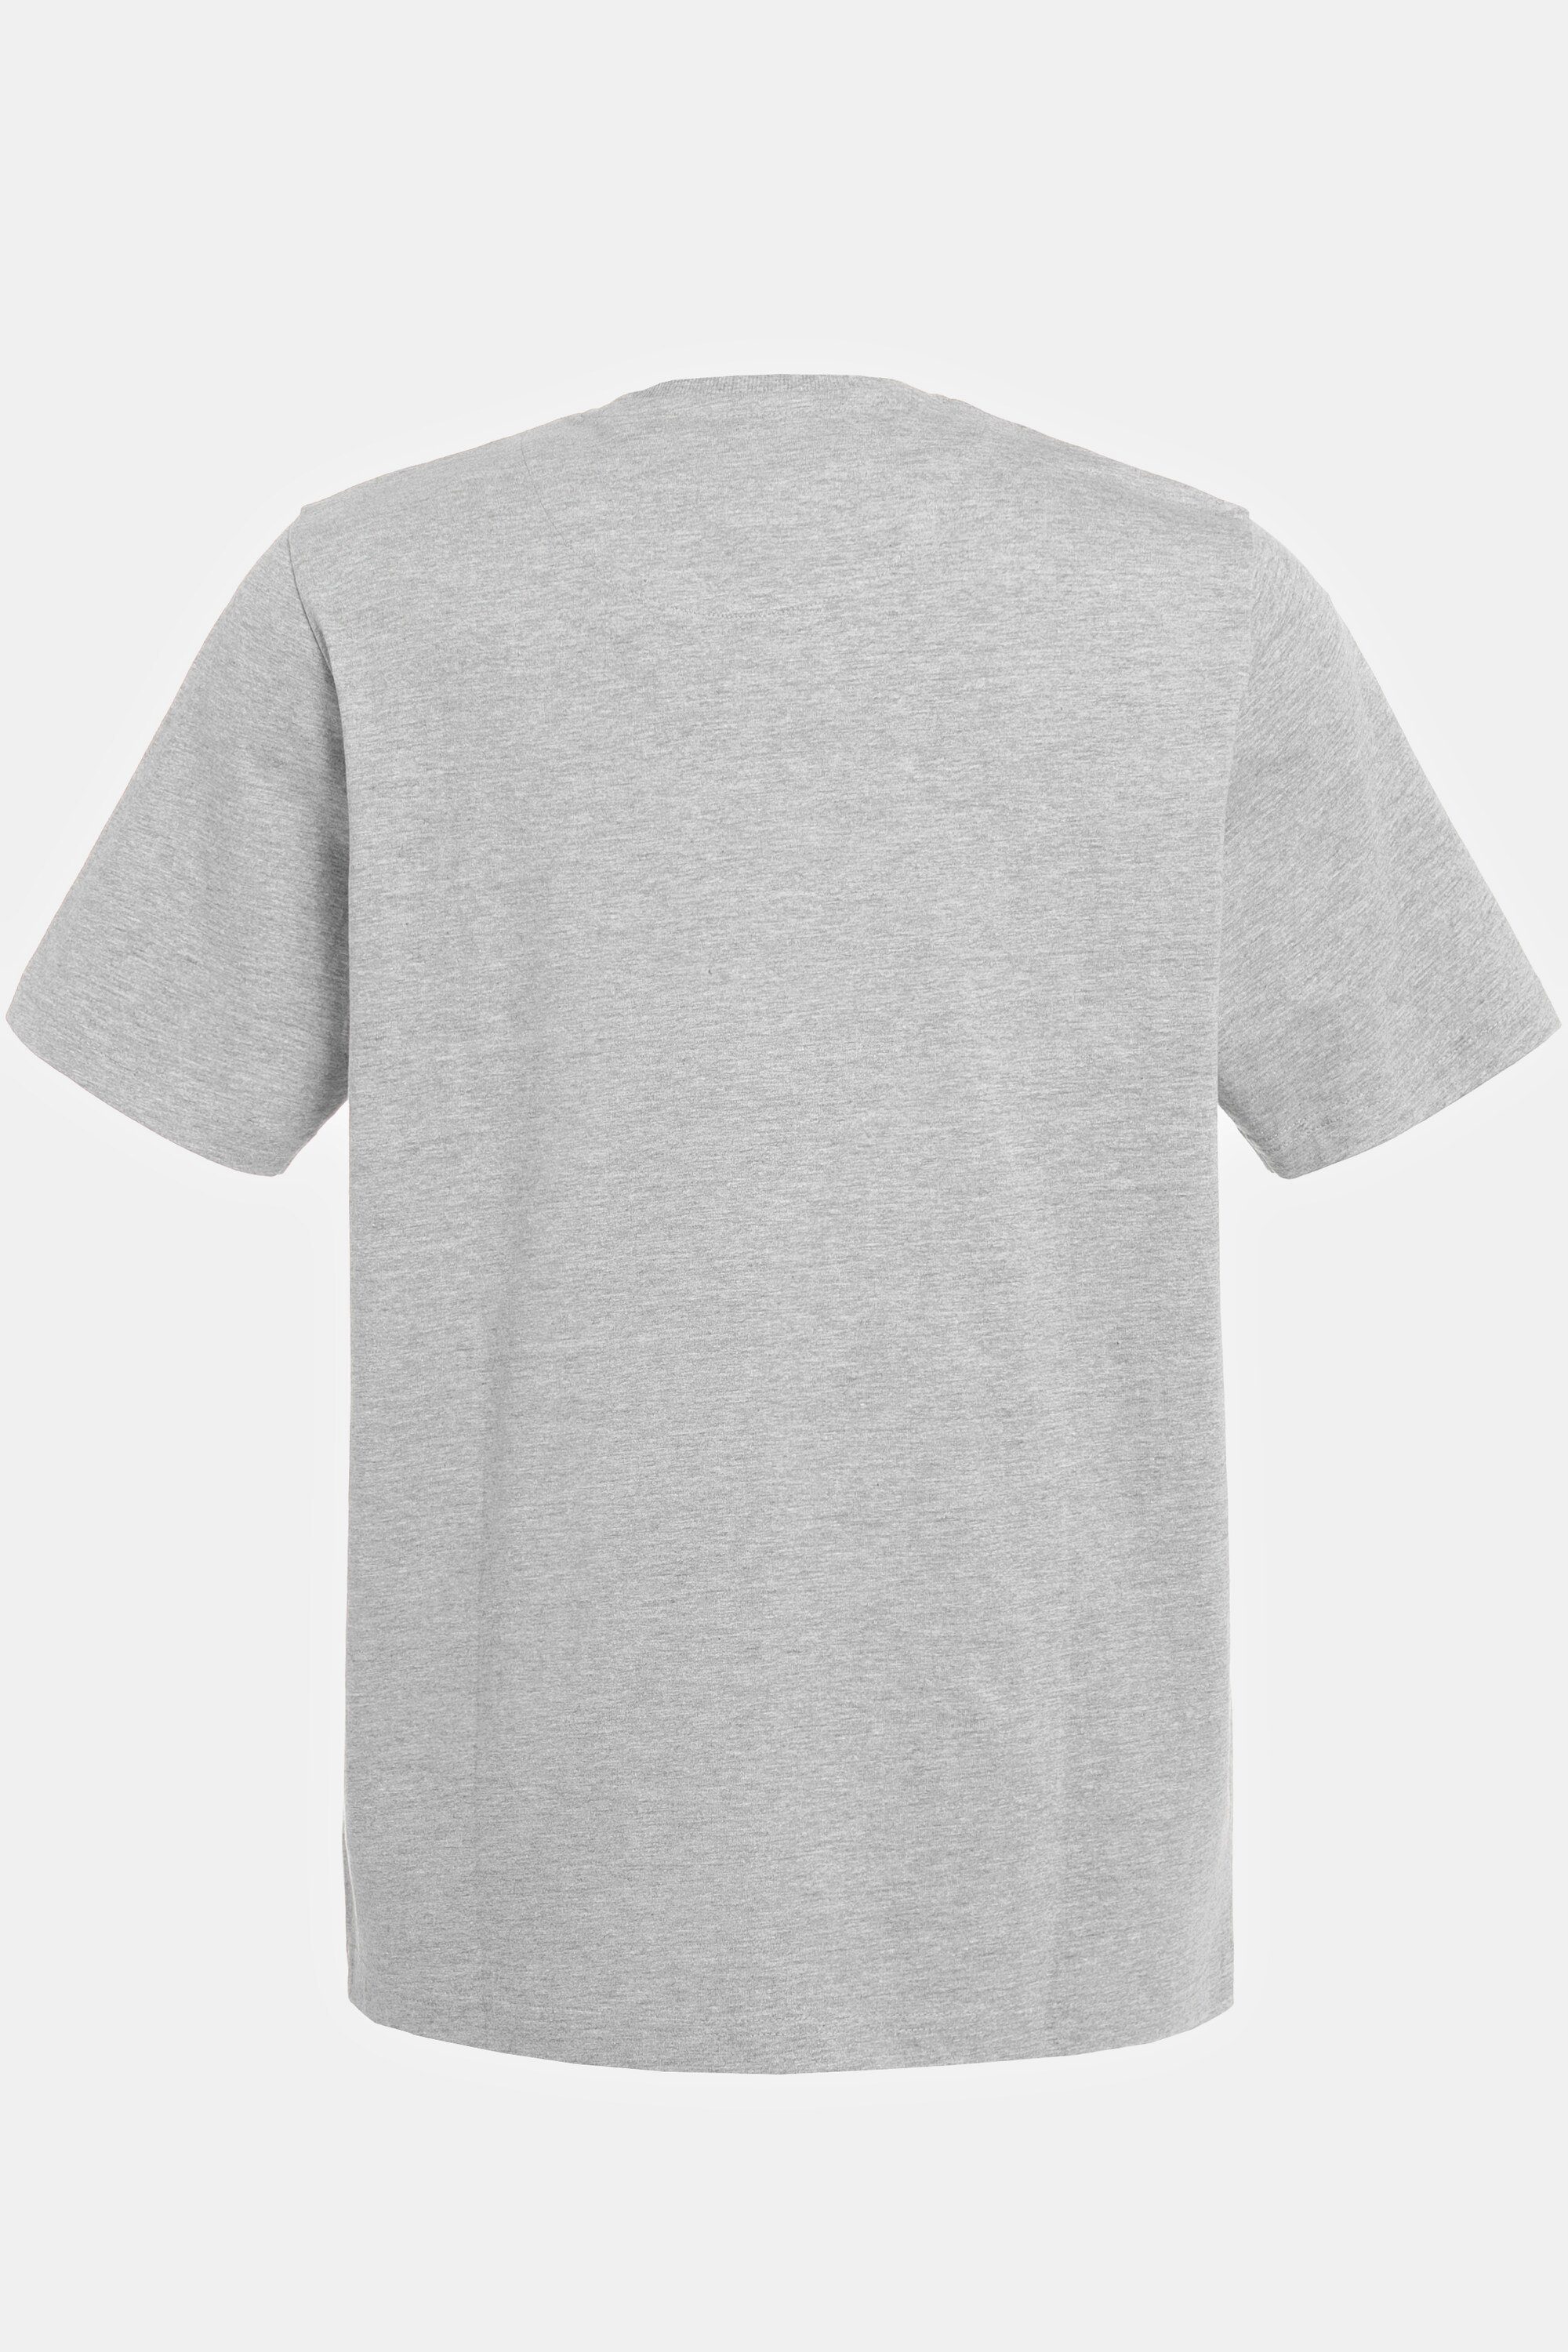 T-Shirt JP1880 Print Halbarm T-Shirt